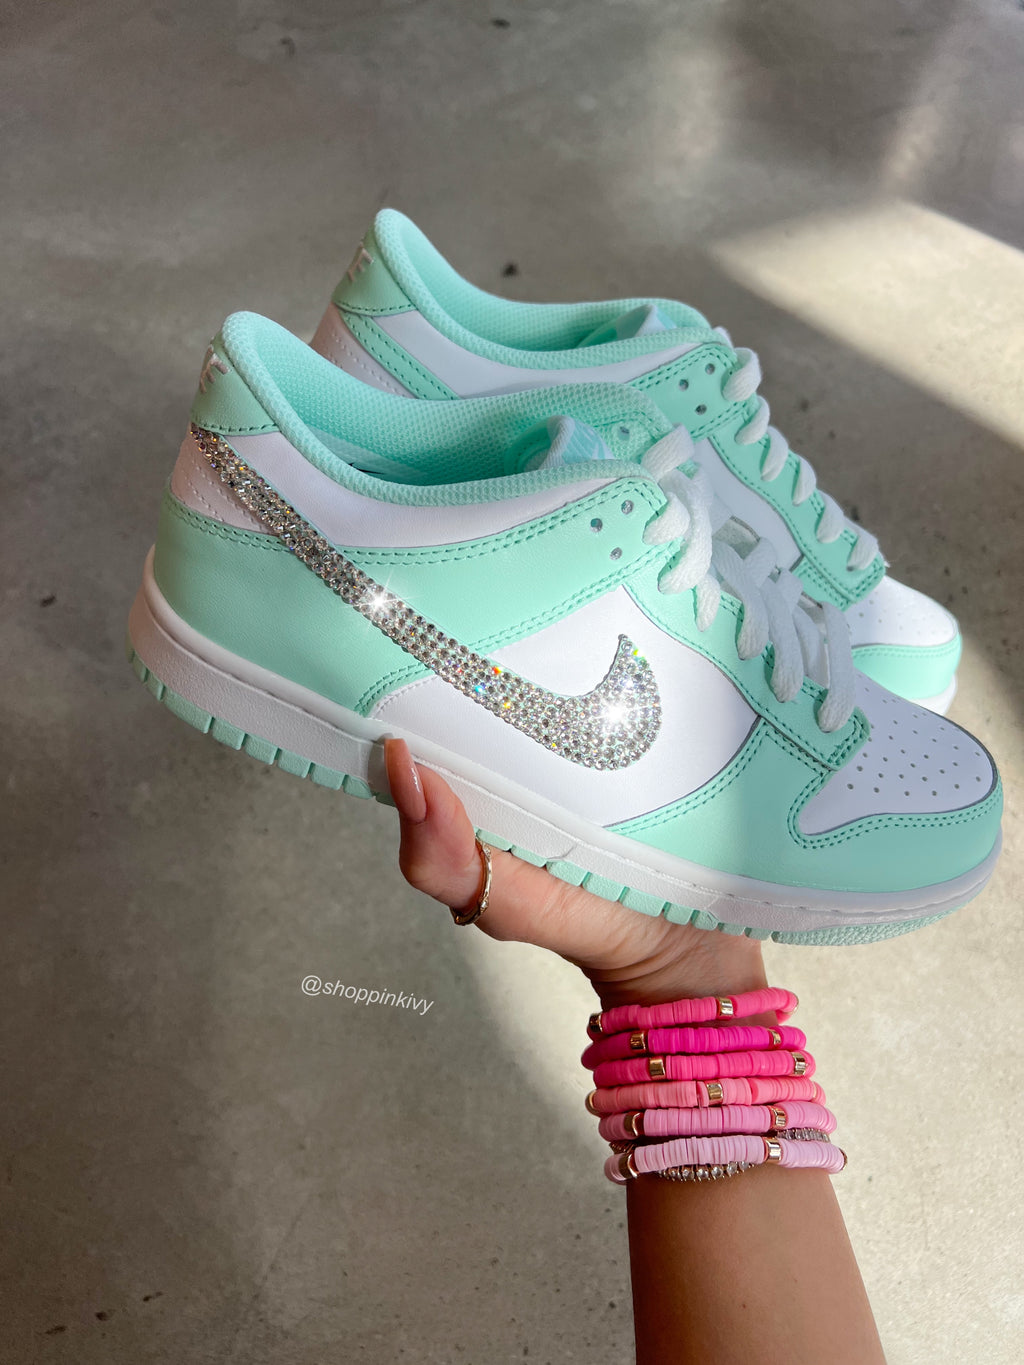 Zapatos Nike Dunk para mujer con Swarovski en color menta